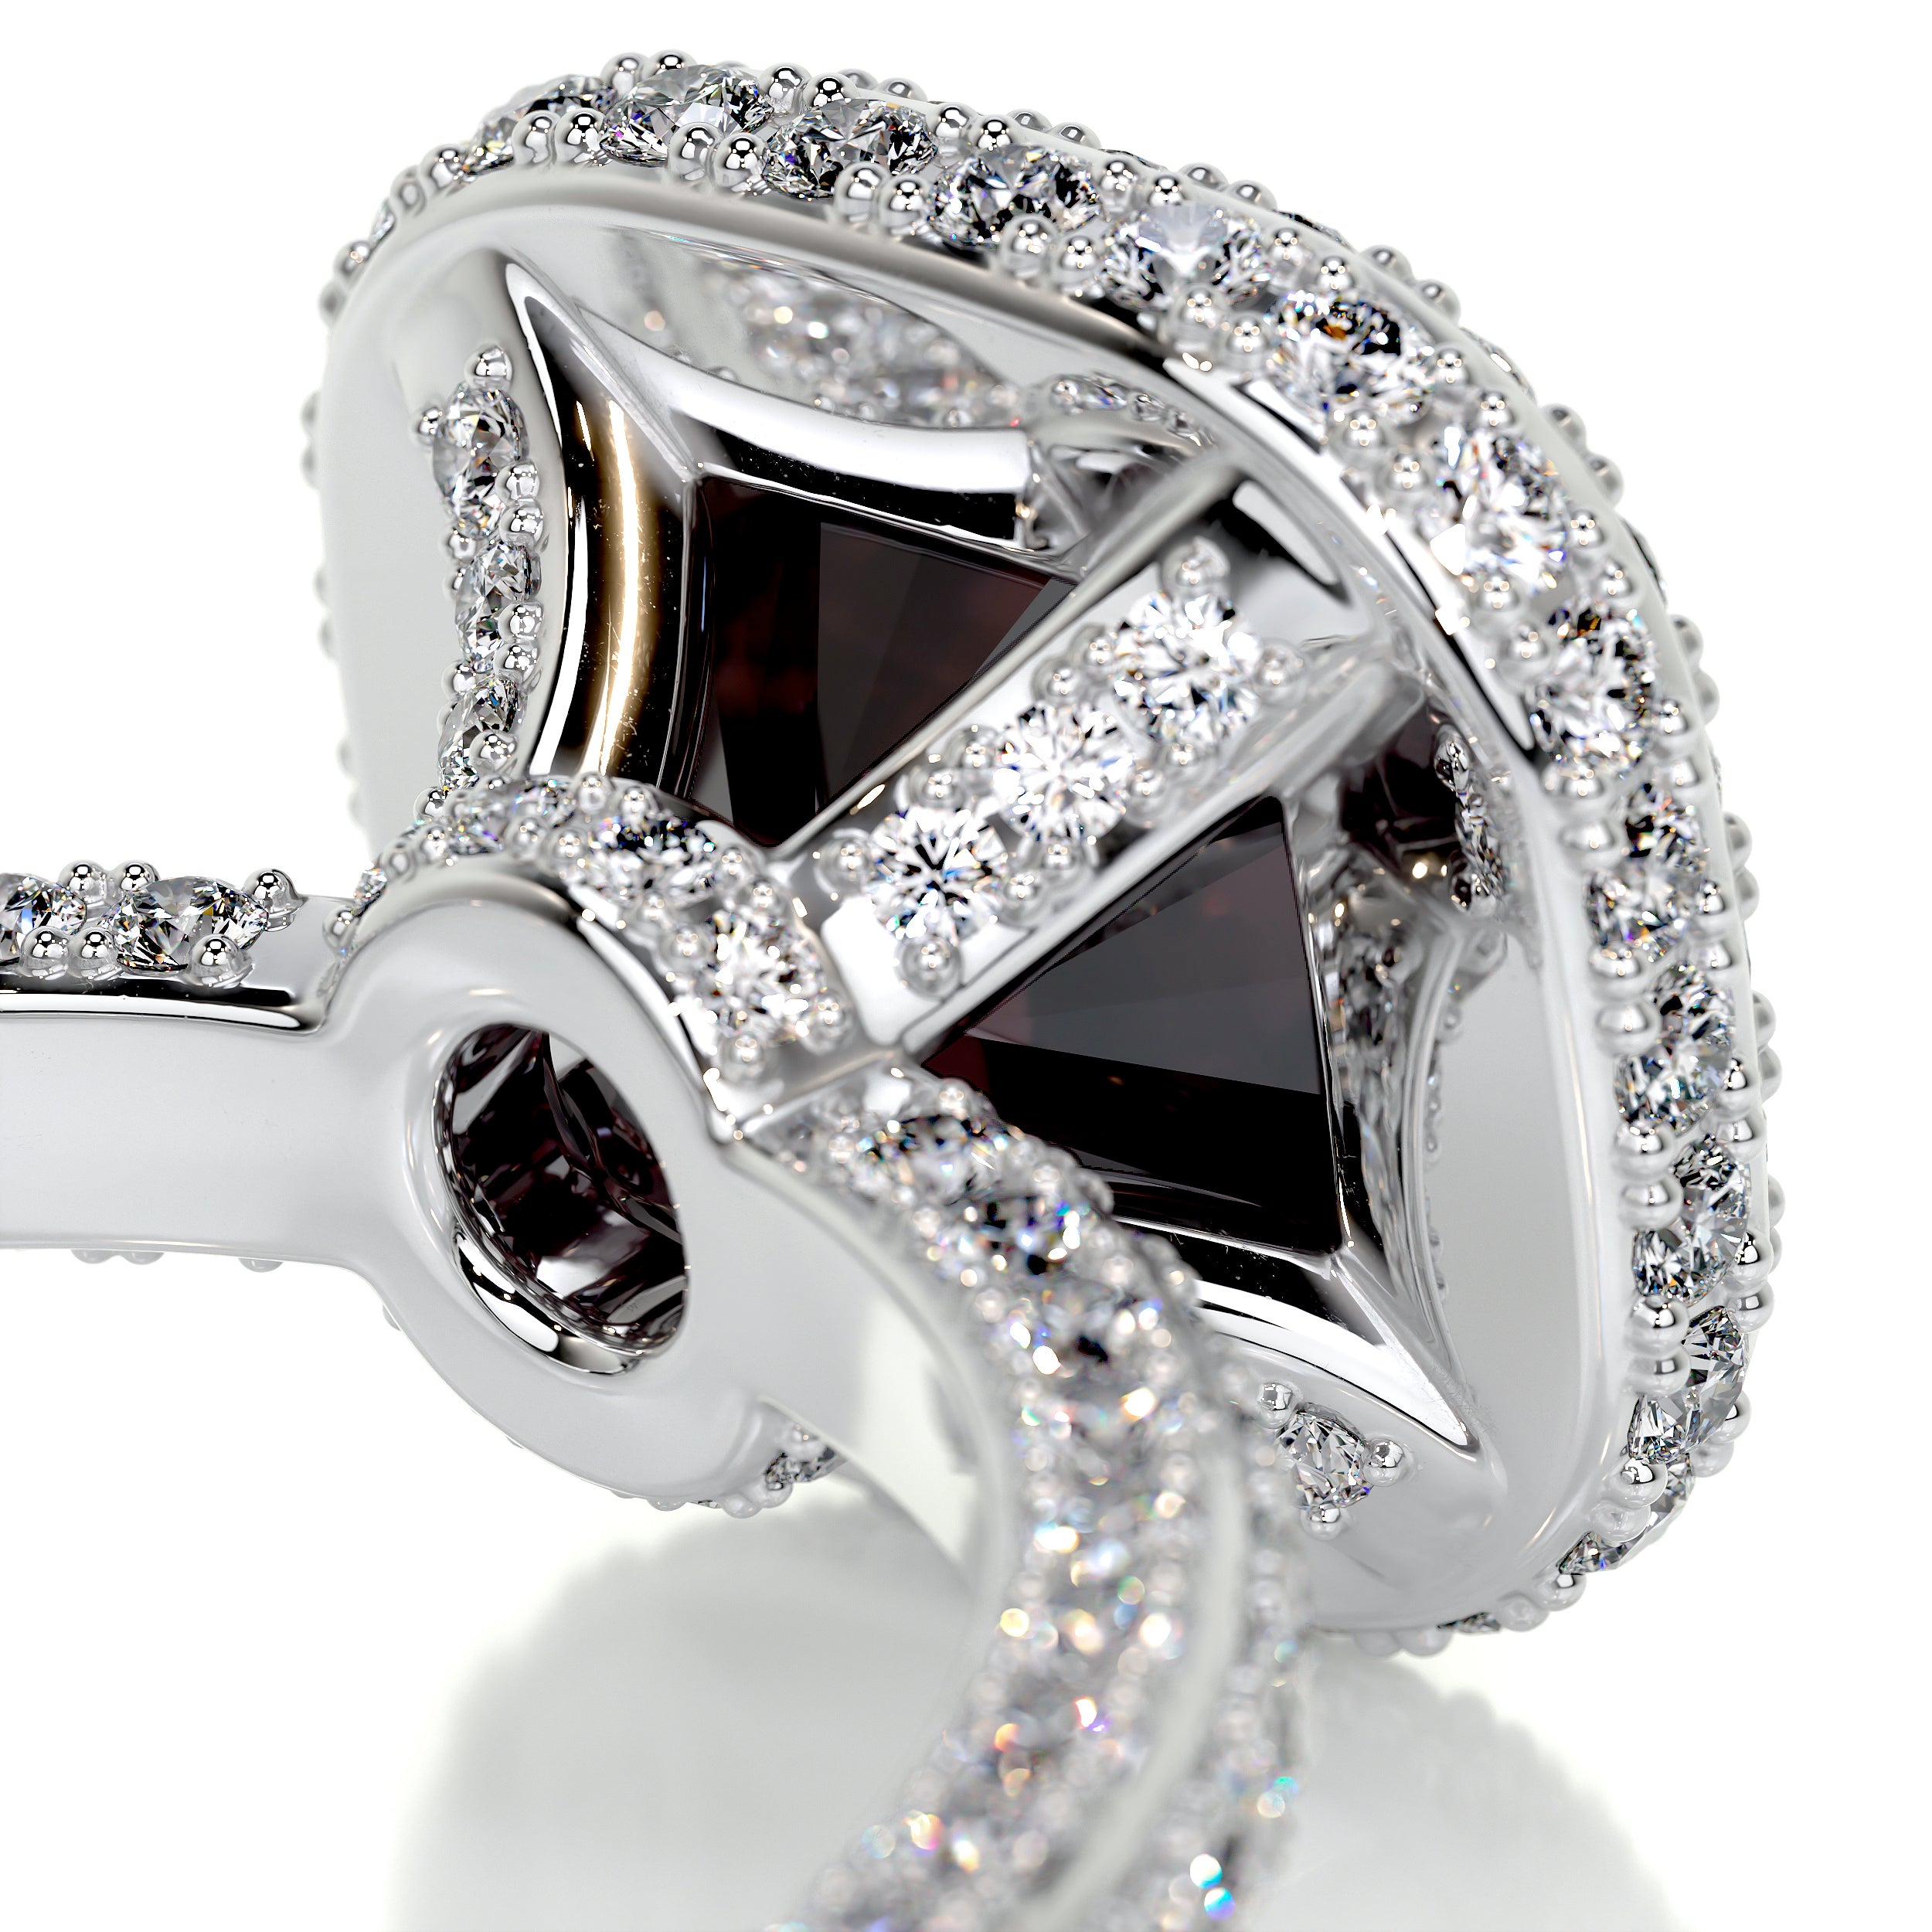 Kim Gemstone & Diamonds Ring   (4 Carat) -18K White Gold